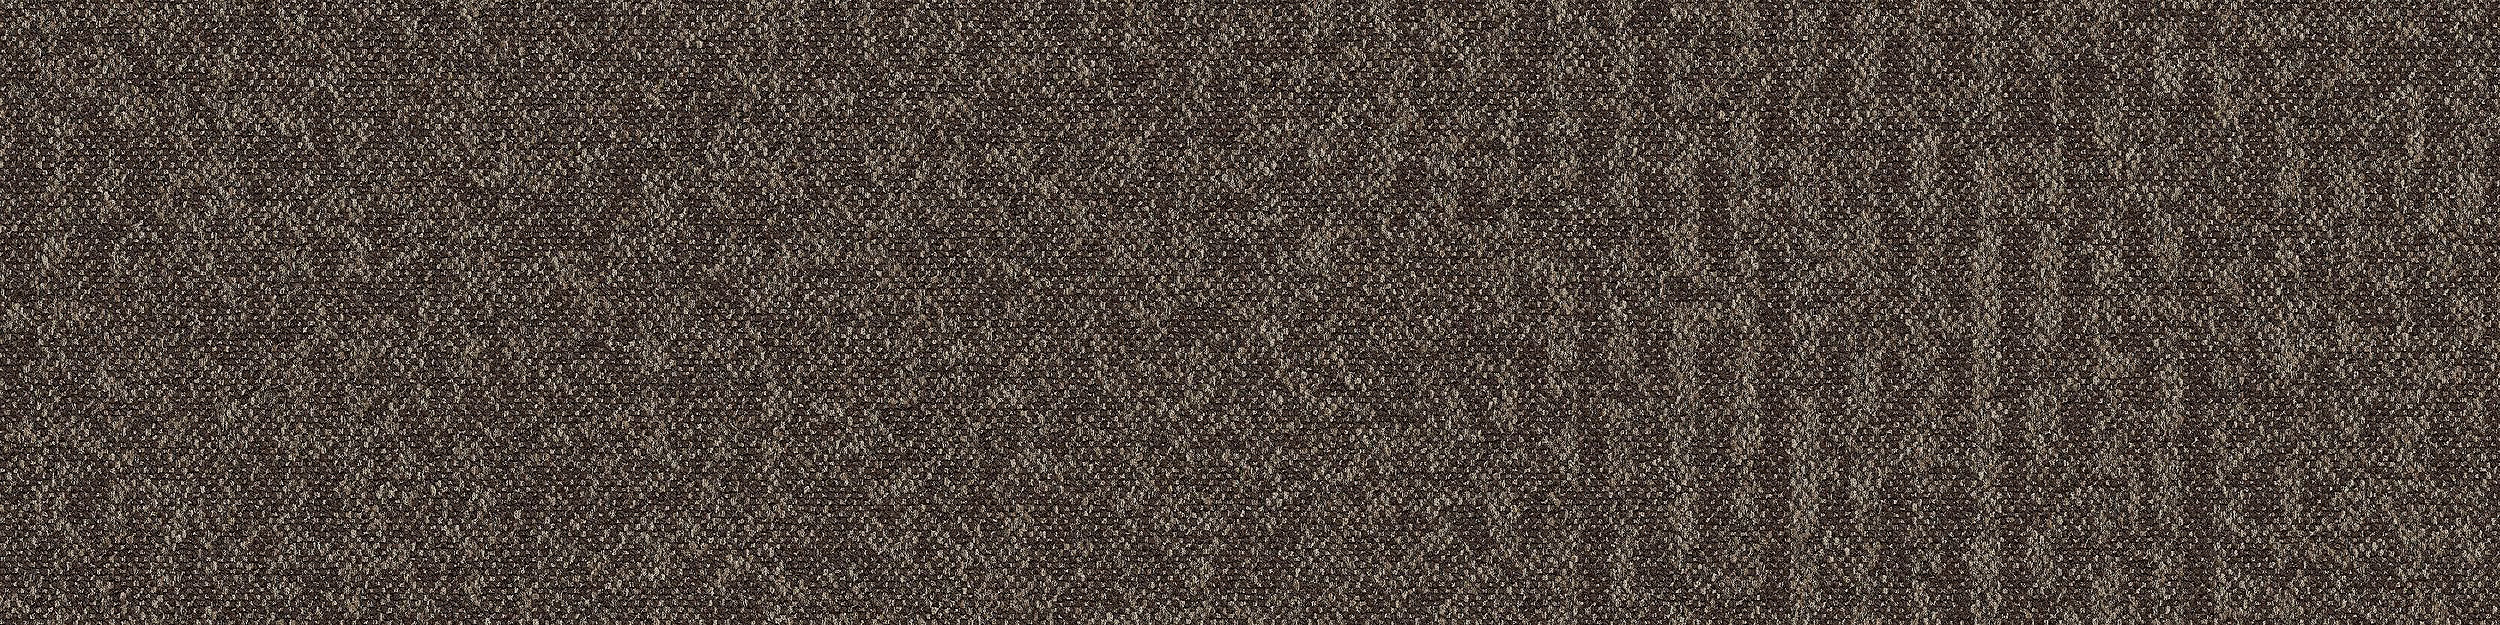 RMS 702 Carpet Tile In Dusk image number 5